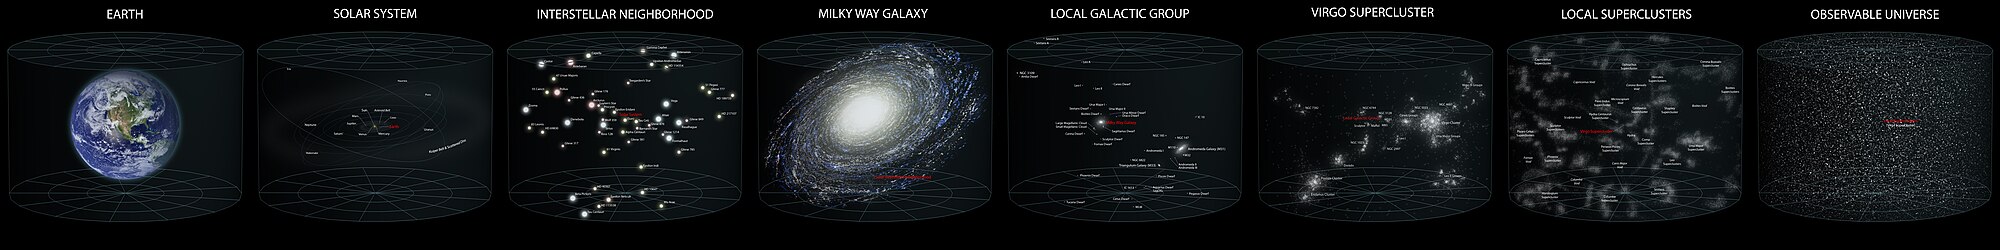 Diagrama del nuesu allugamientu dientro del Universu observable. (Click equí pa ver en pantalla completa.)